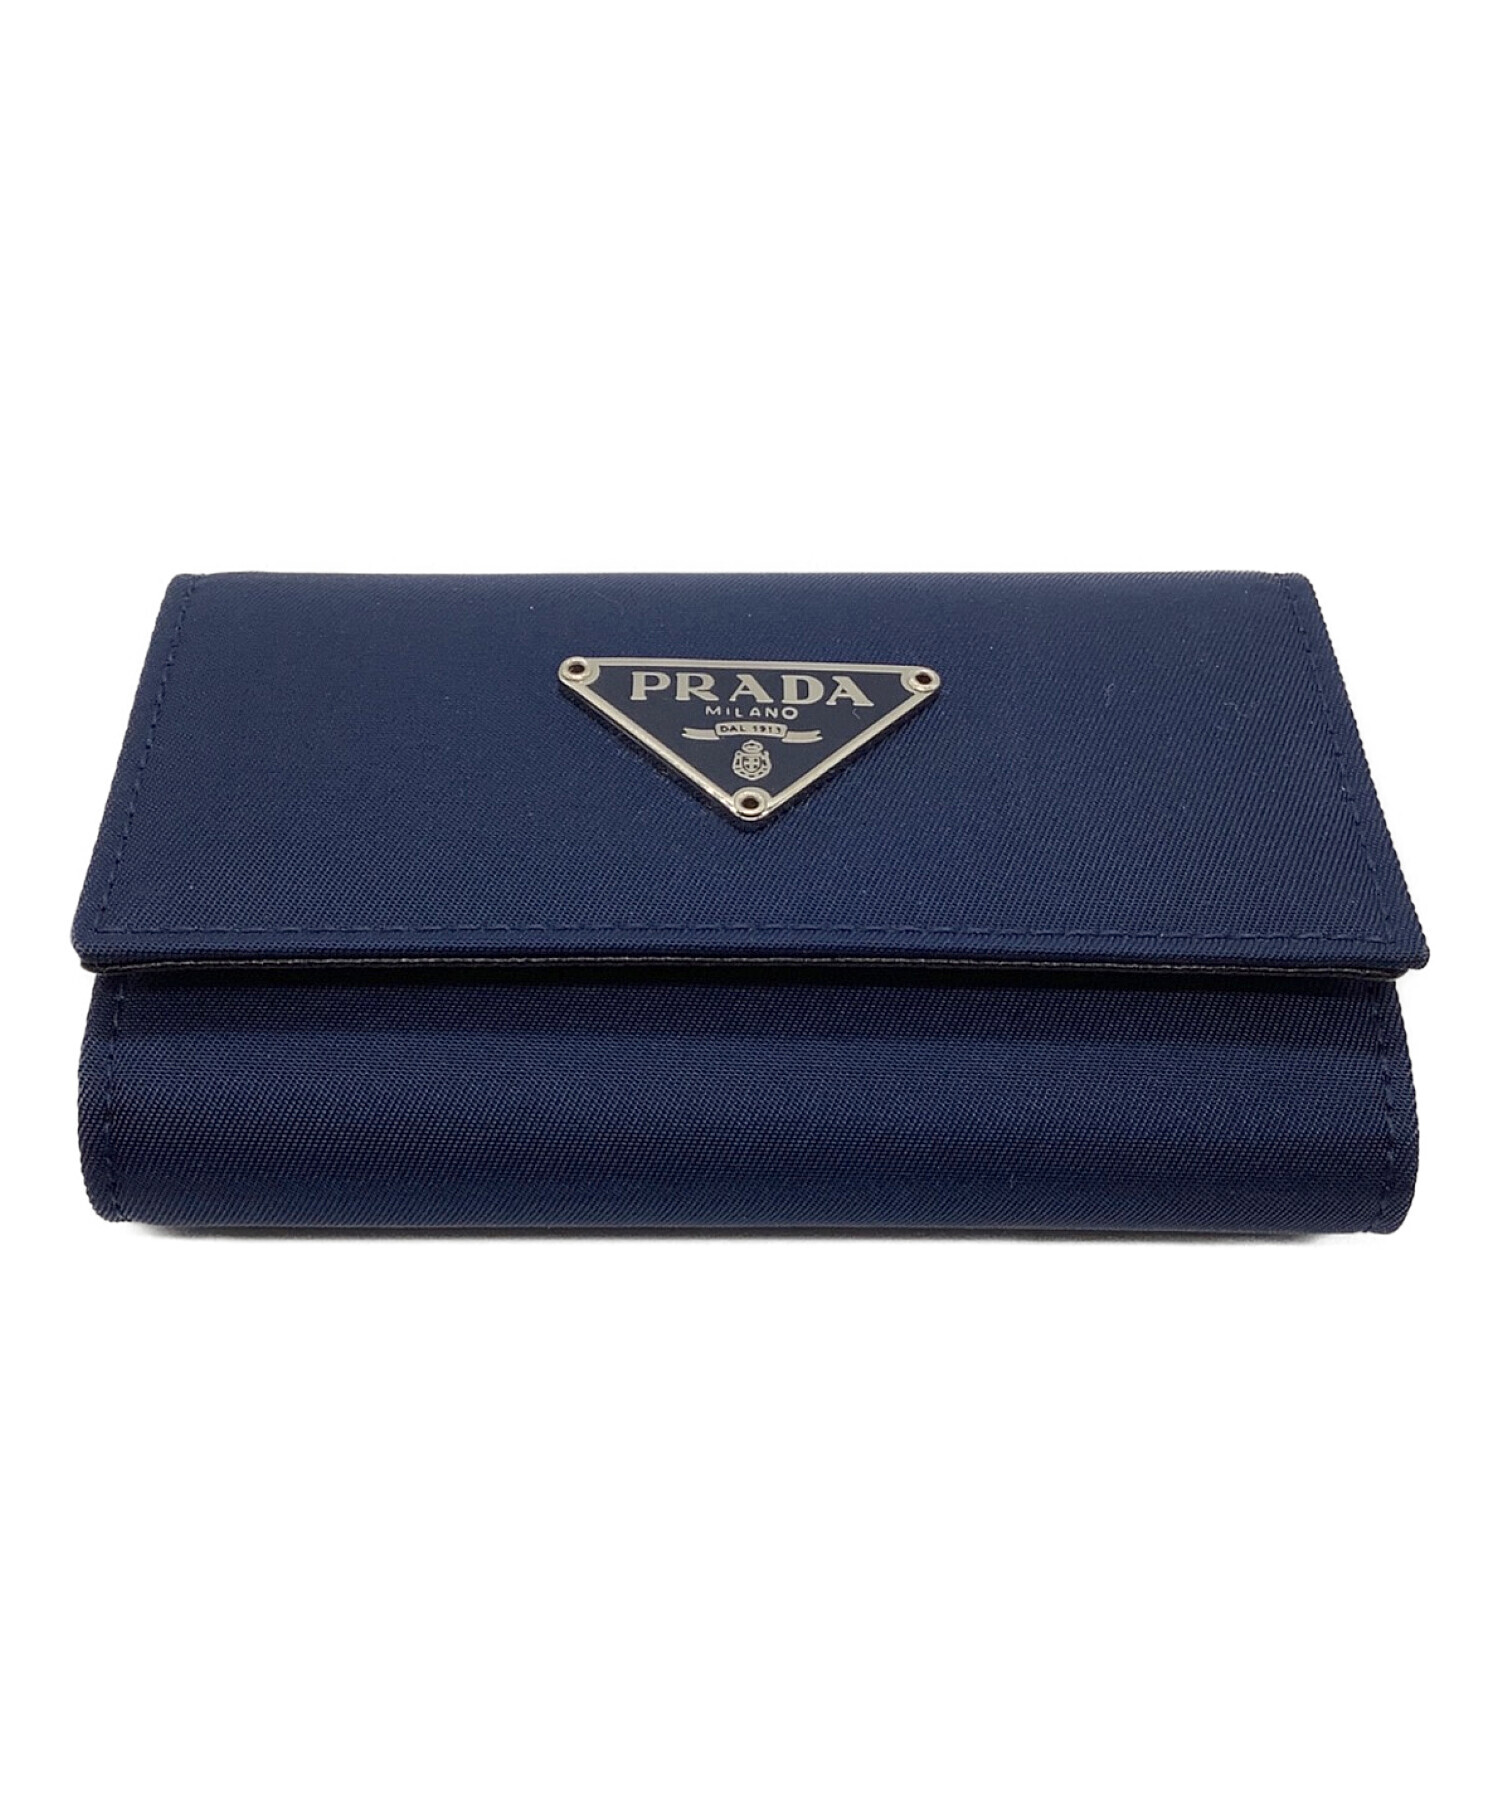 美品✨ Gカード、箱付き プラダ PRADA  キーケース ブルー ネイビー